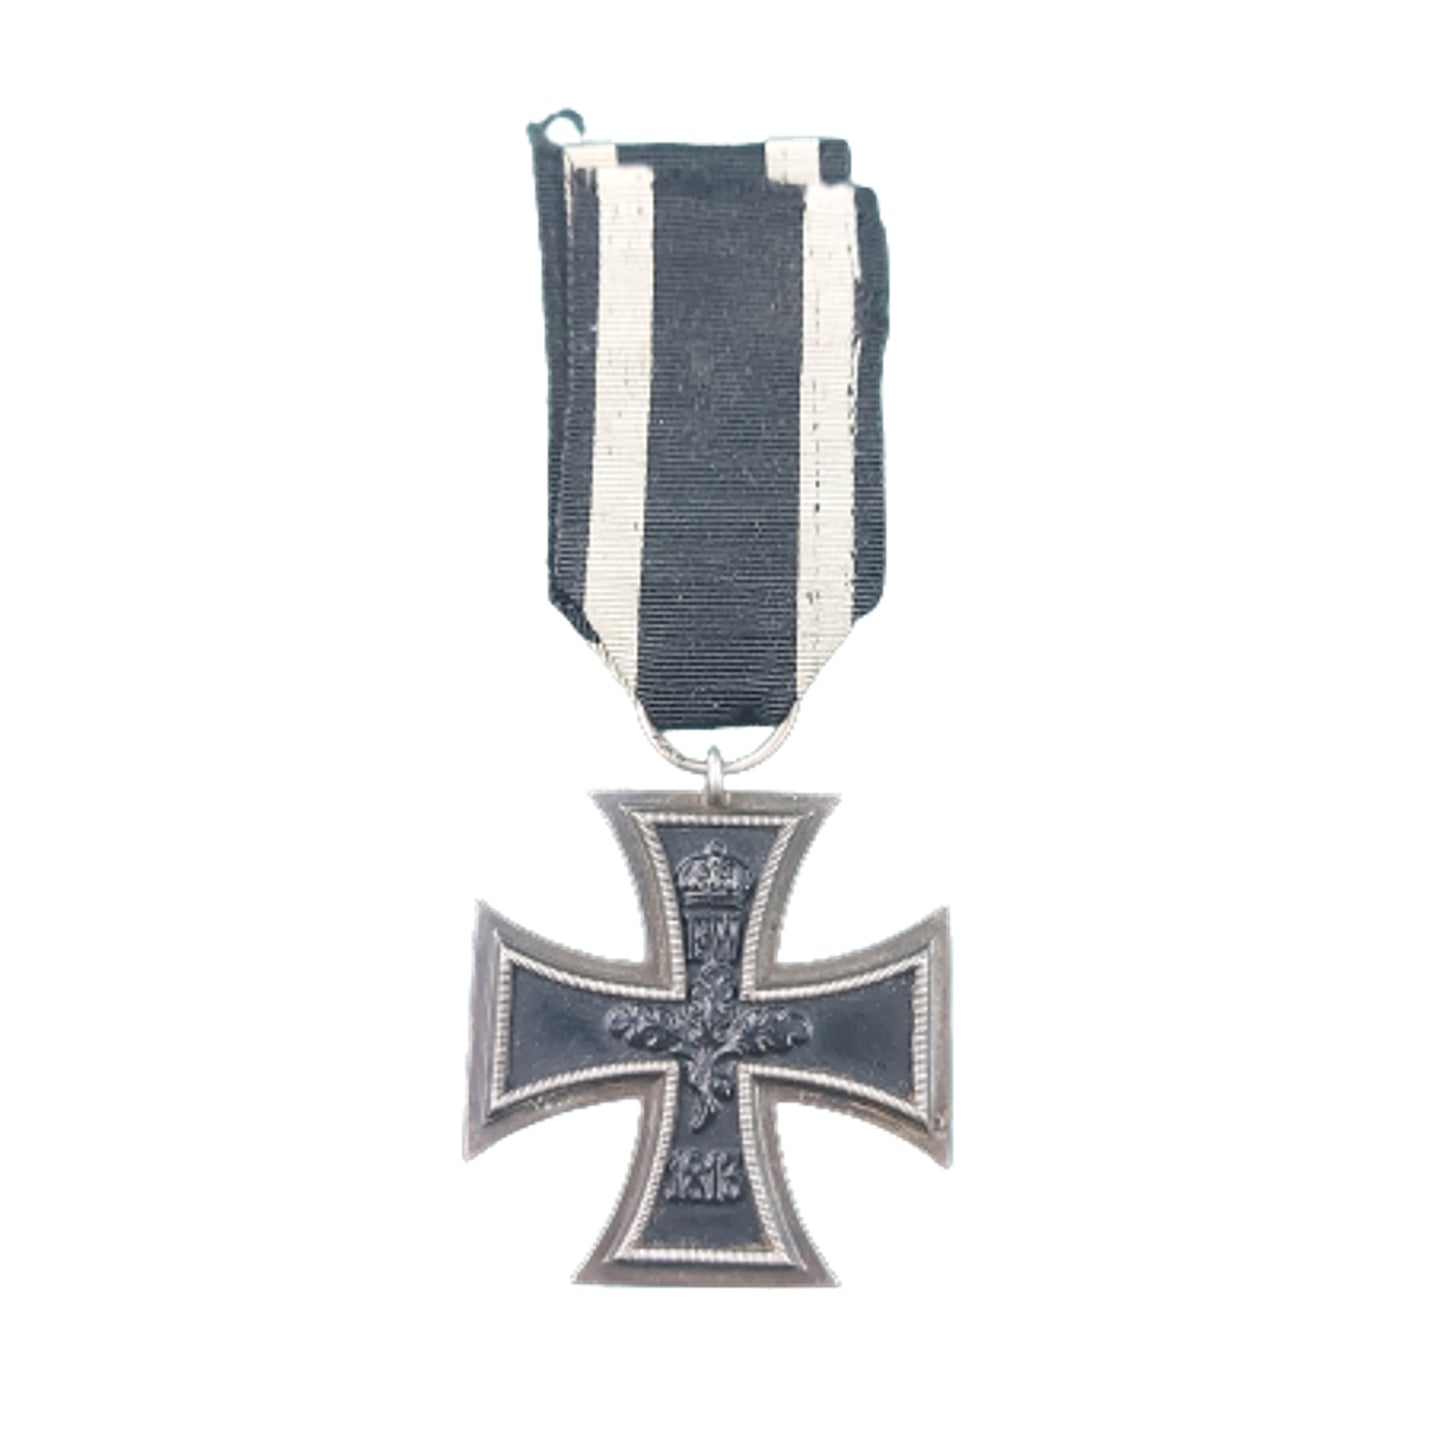 WW1 German Iron Cross 2nd Class -Maker Marked